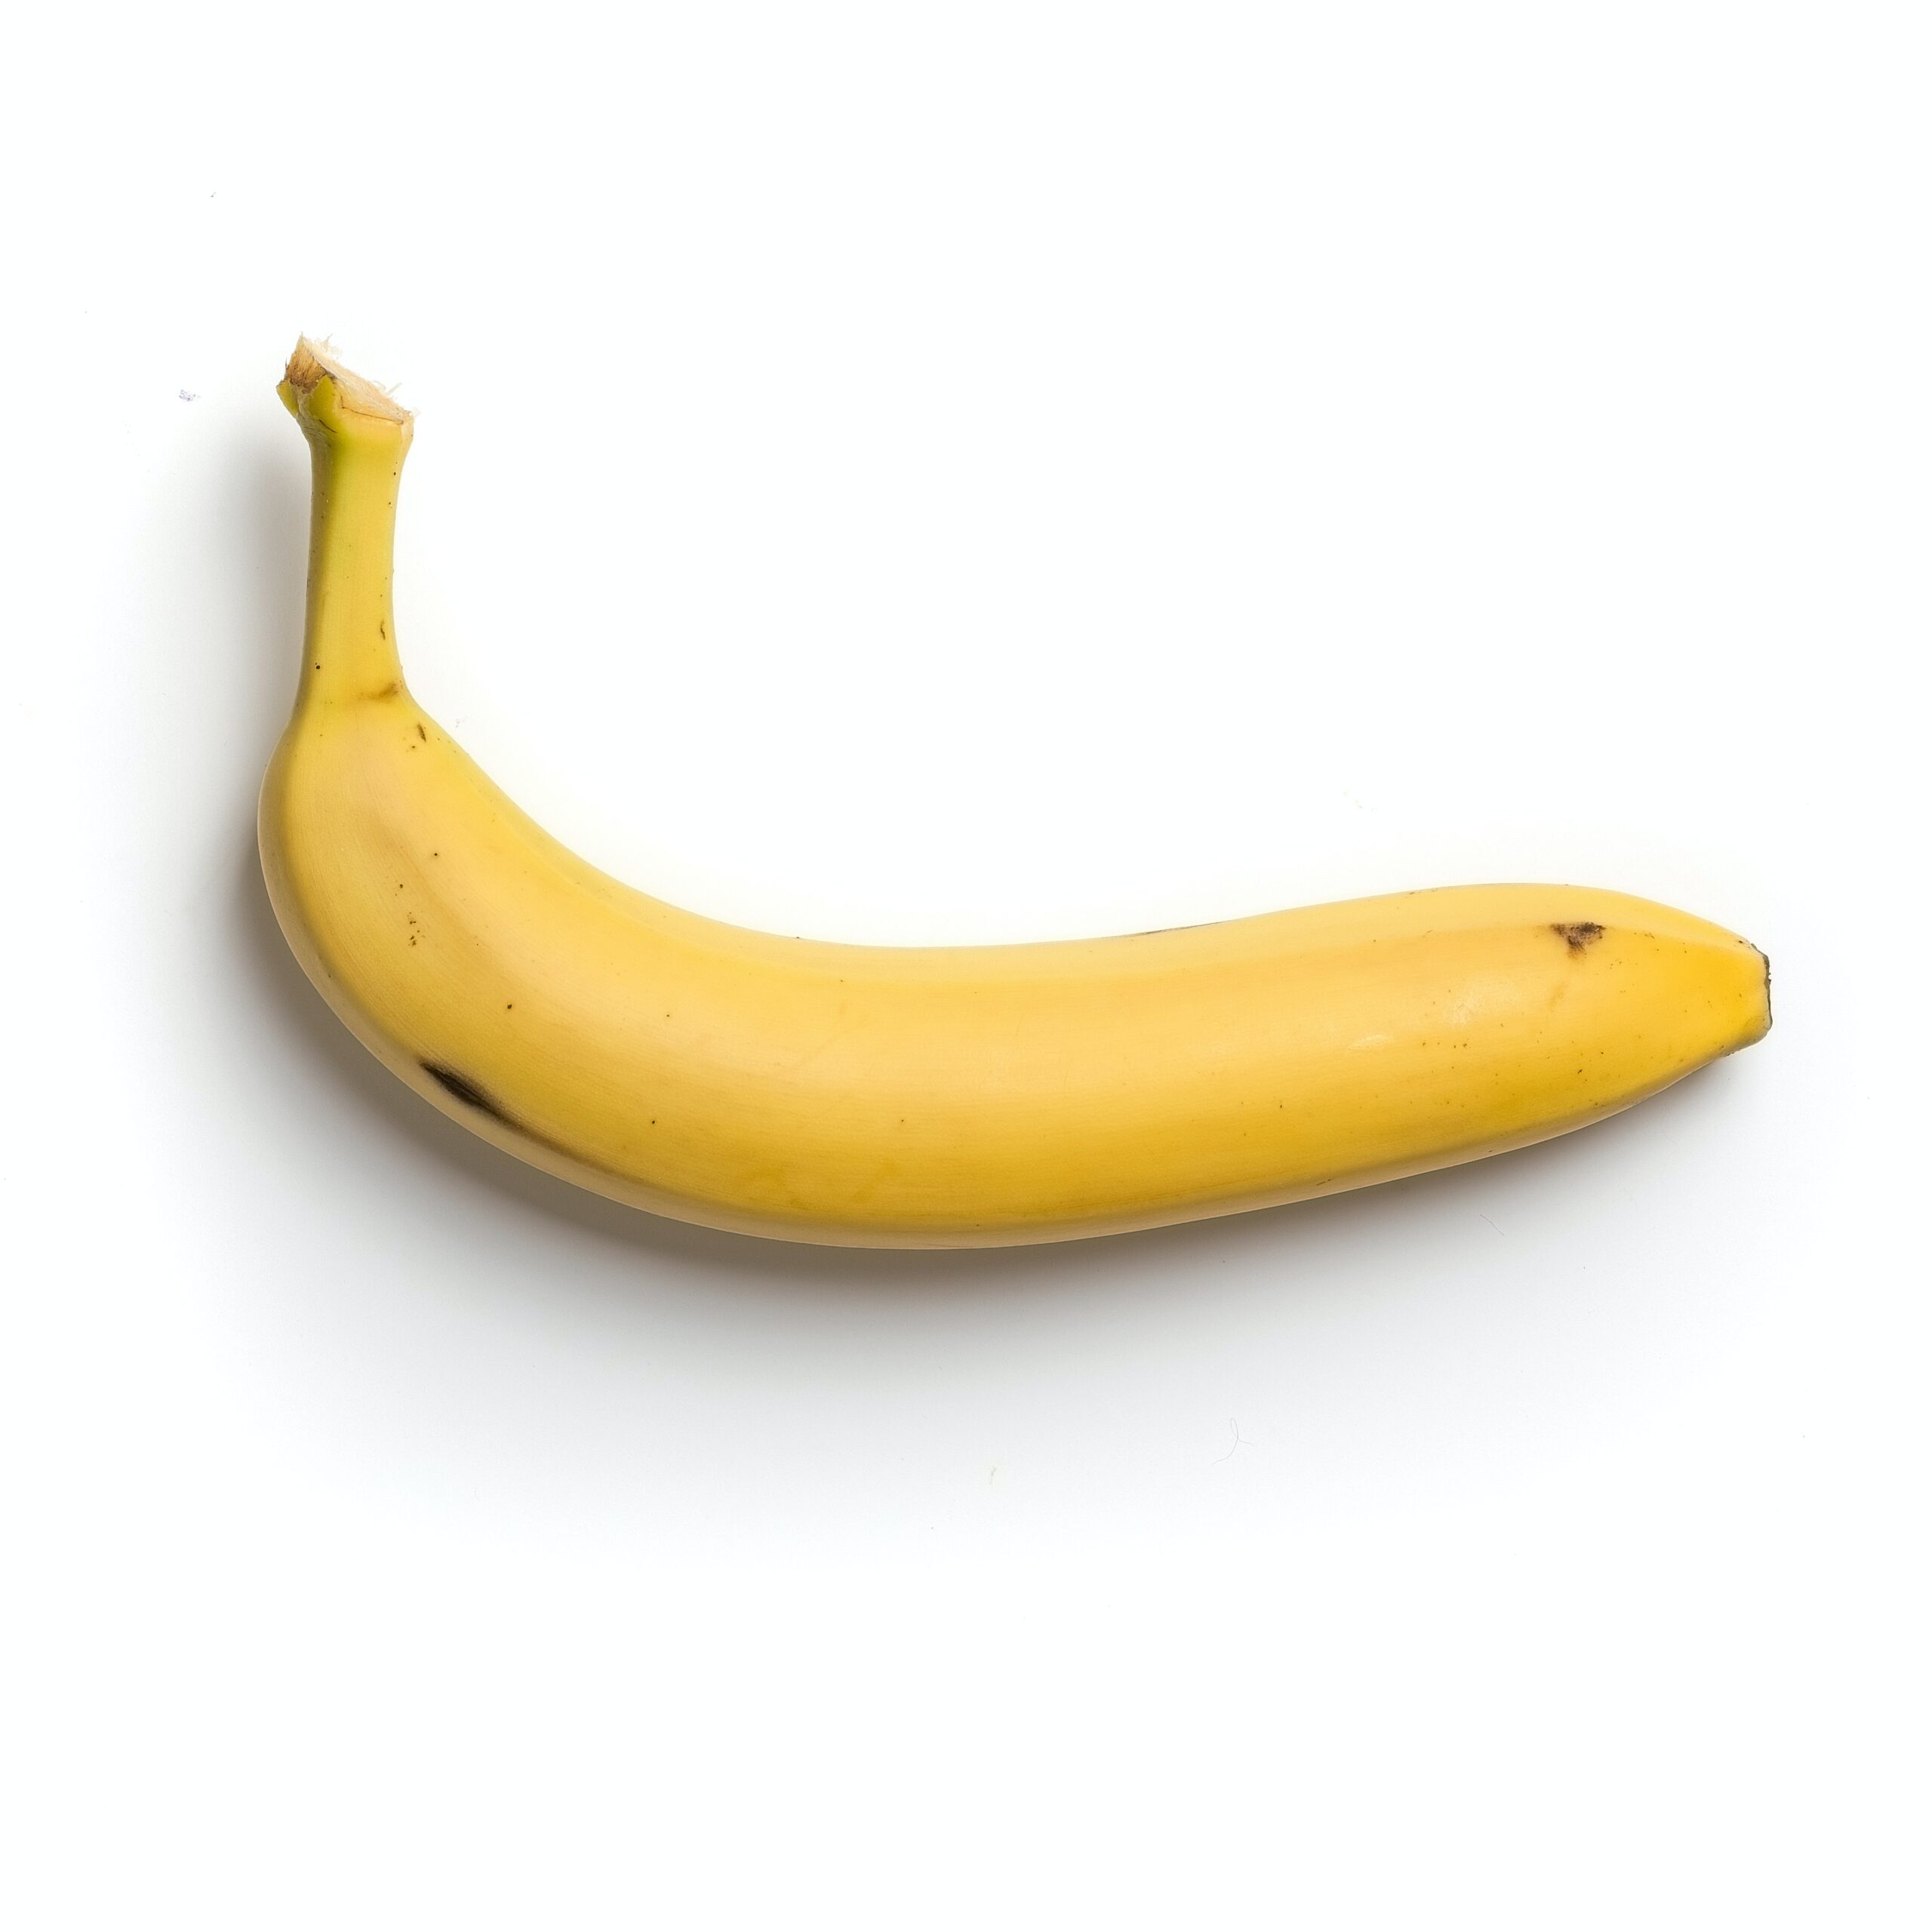 Banano Cavendish